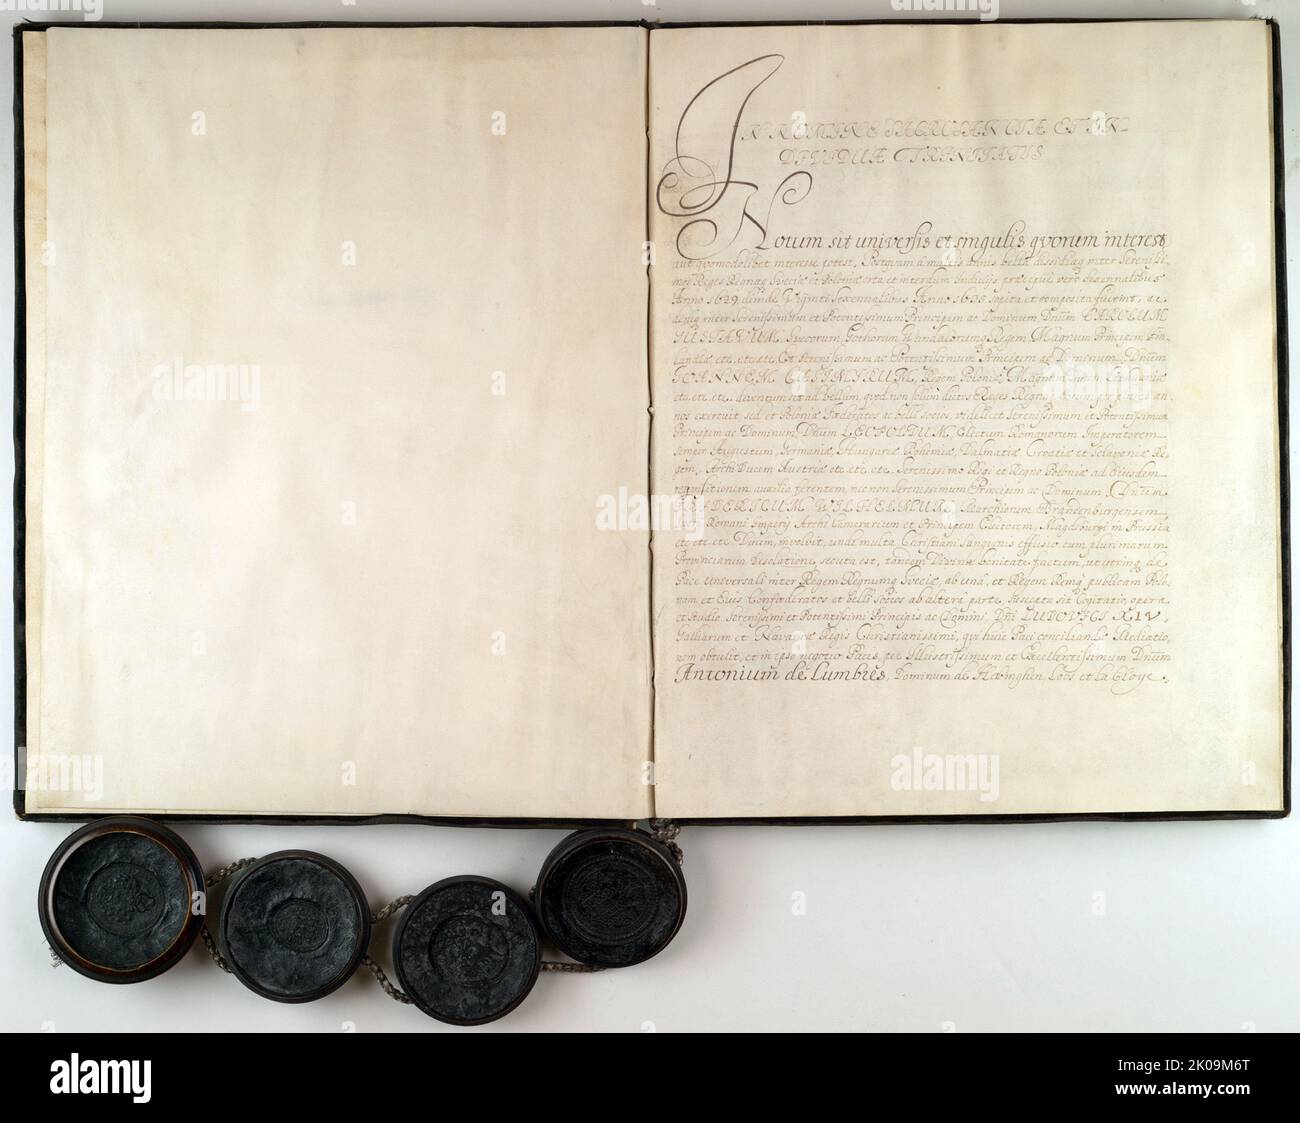 Der Vertrag von Oliva vom 23. April 1660 war einer der Friedensverträge, die den Zweiten Nordischen Krieg (1655-1660) beendeten. Der Vertrag von Oliva, der Vertrag von Kopenhagen im selben Jahr und der Vertrag von Cardis im folgenden Jahr markierten den Höhepunkt des schwedischen Reiches. Stockfoto